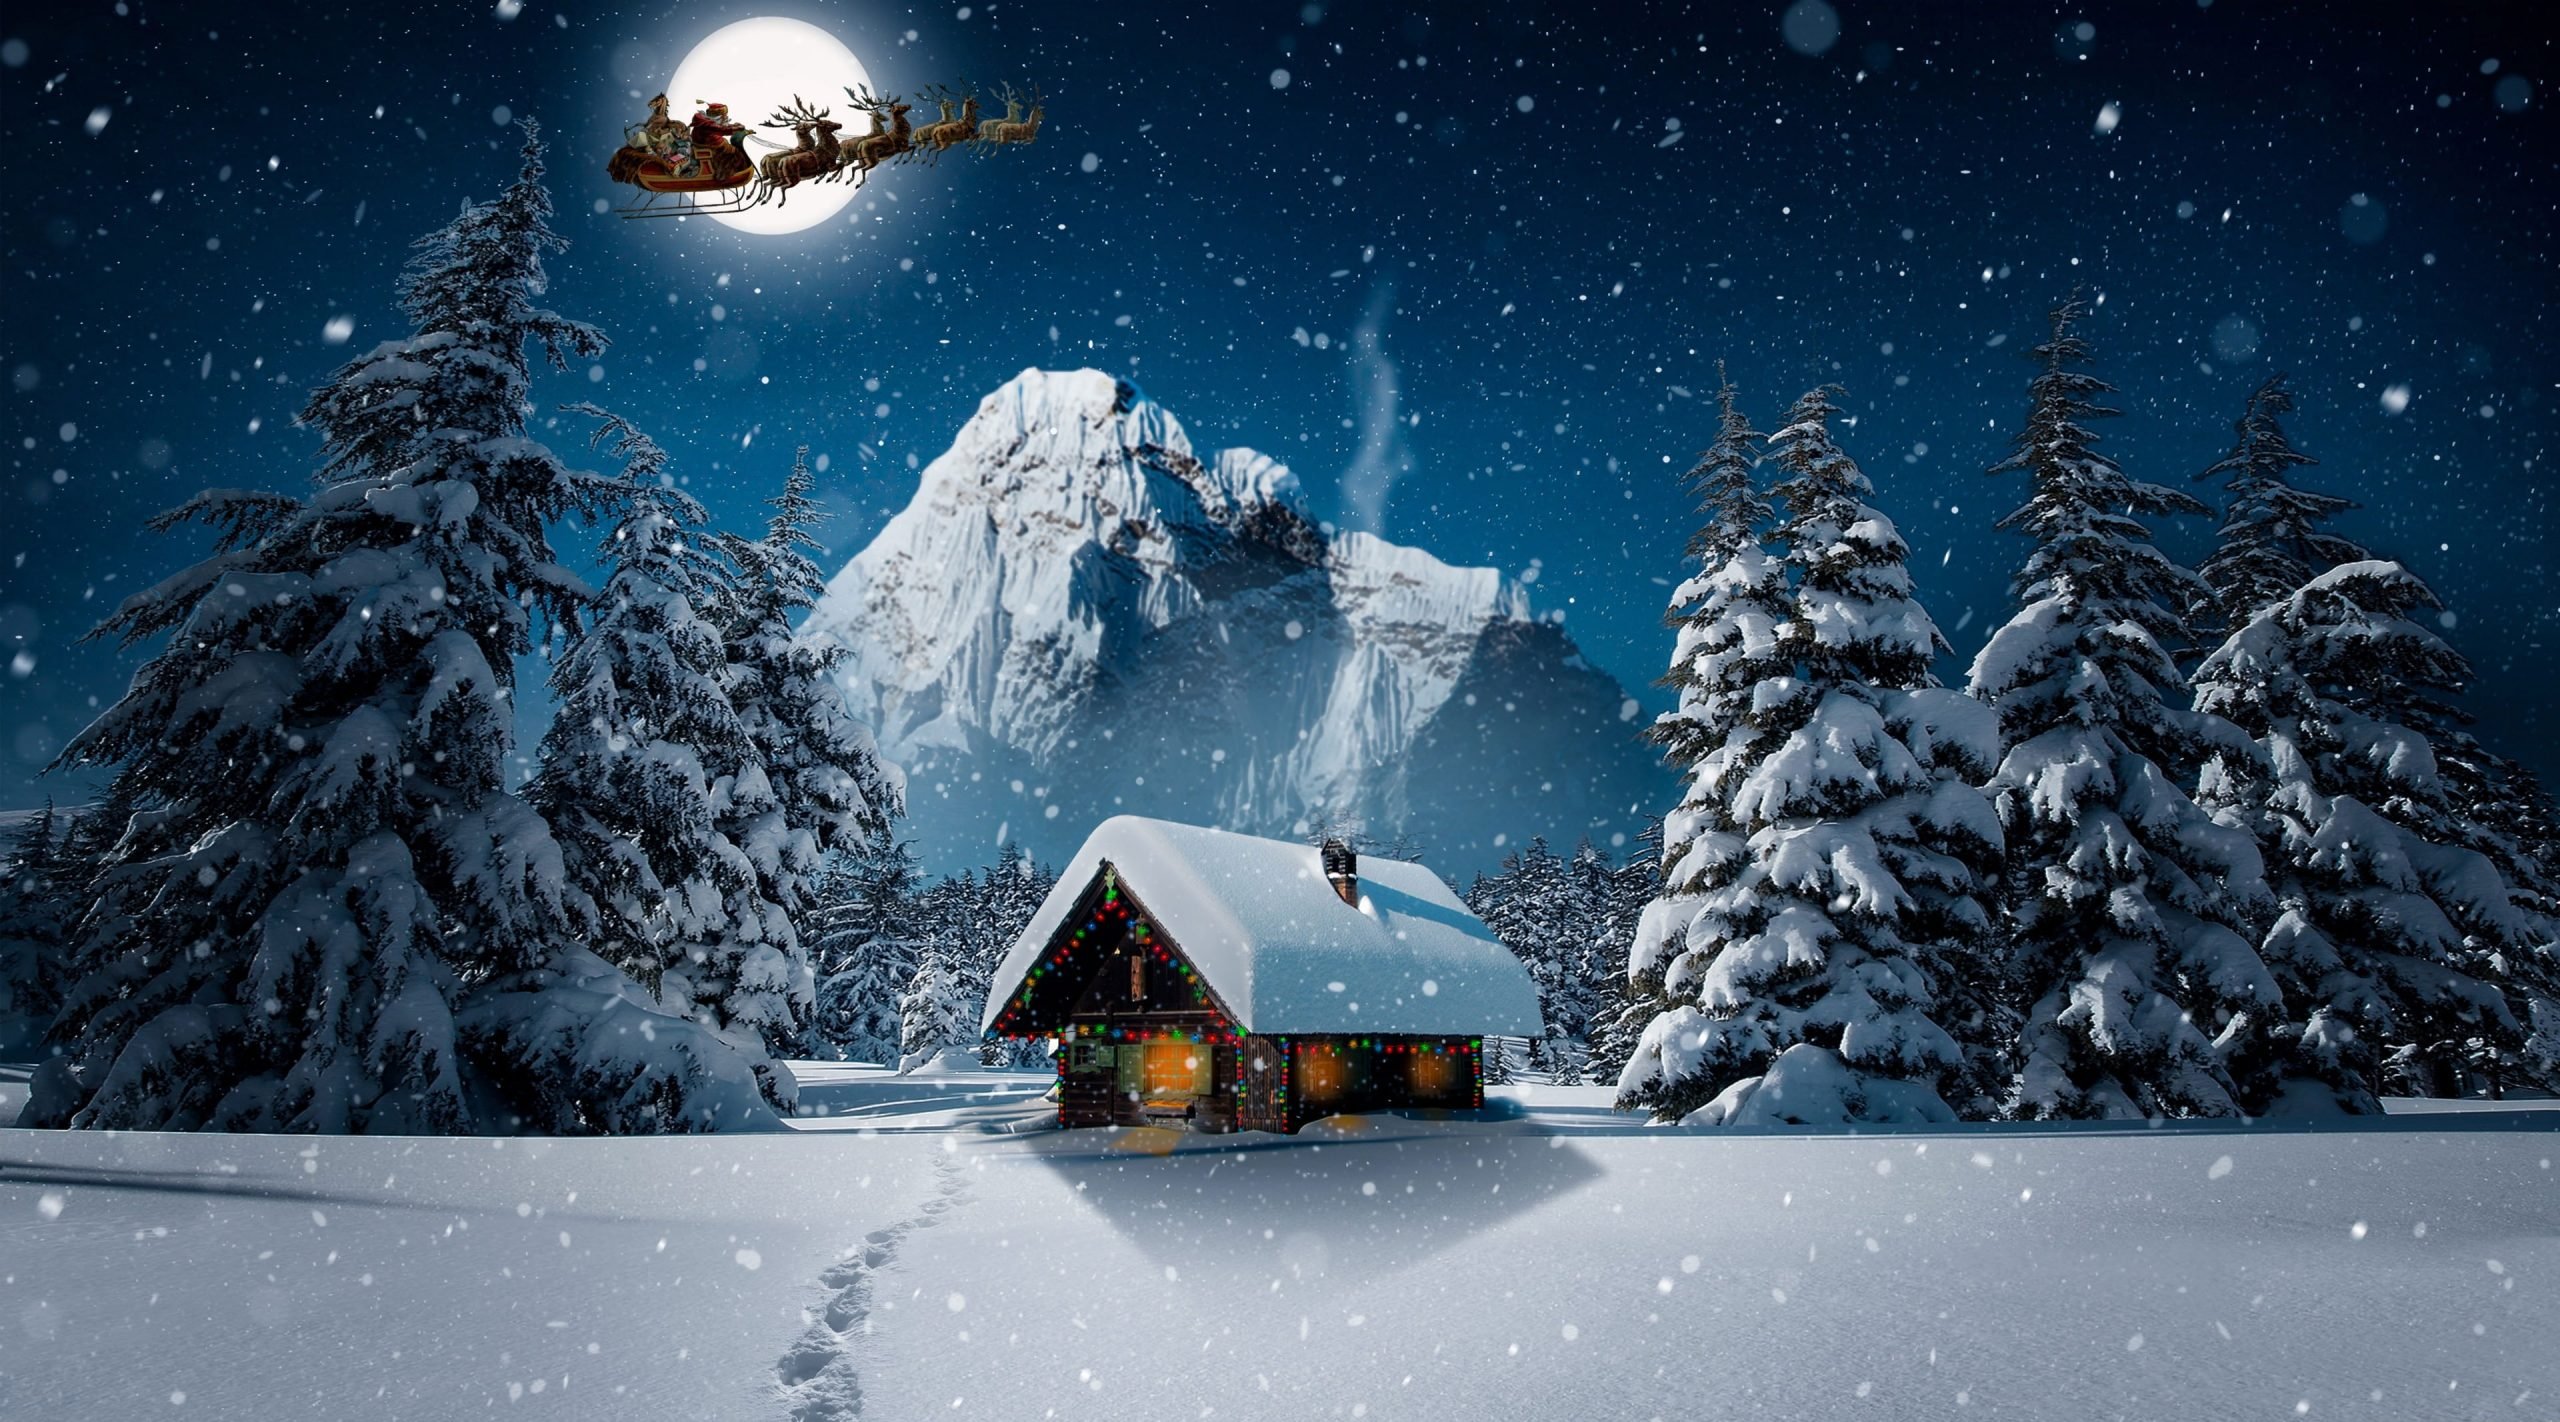 Christmas Winter 4K Wallpaper, Holidays, Landscape, Night, Design, Fantasy